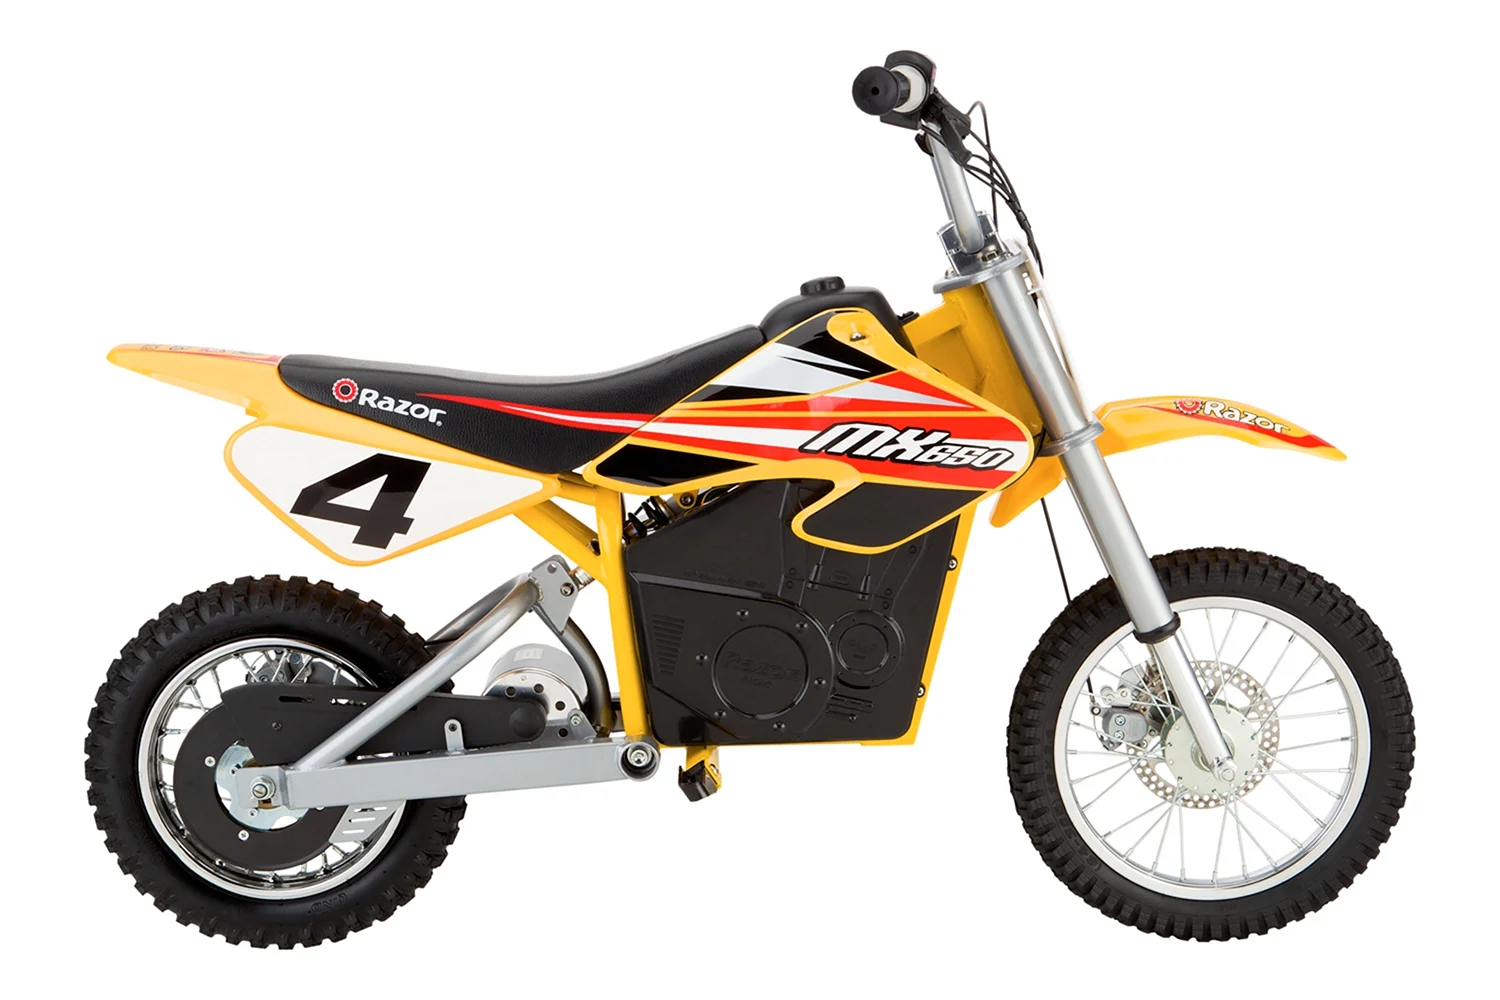 Razor мотоцикл mx650